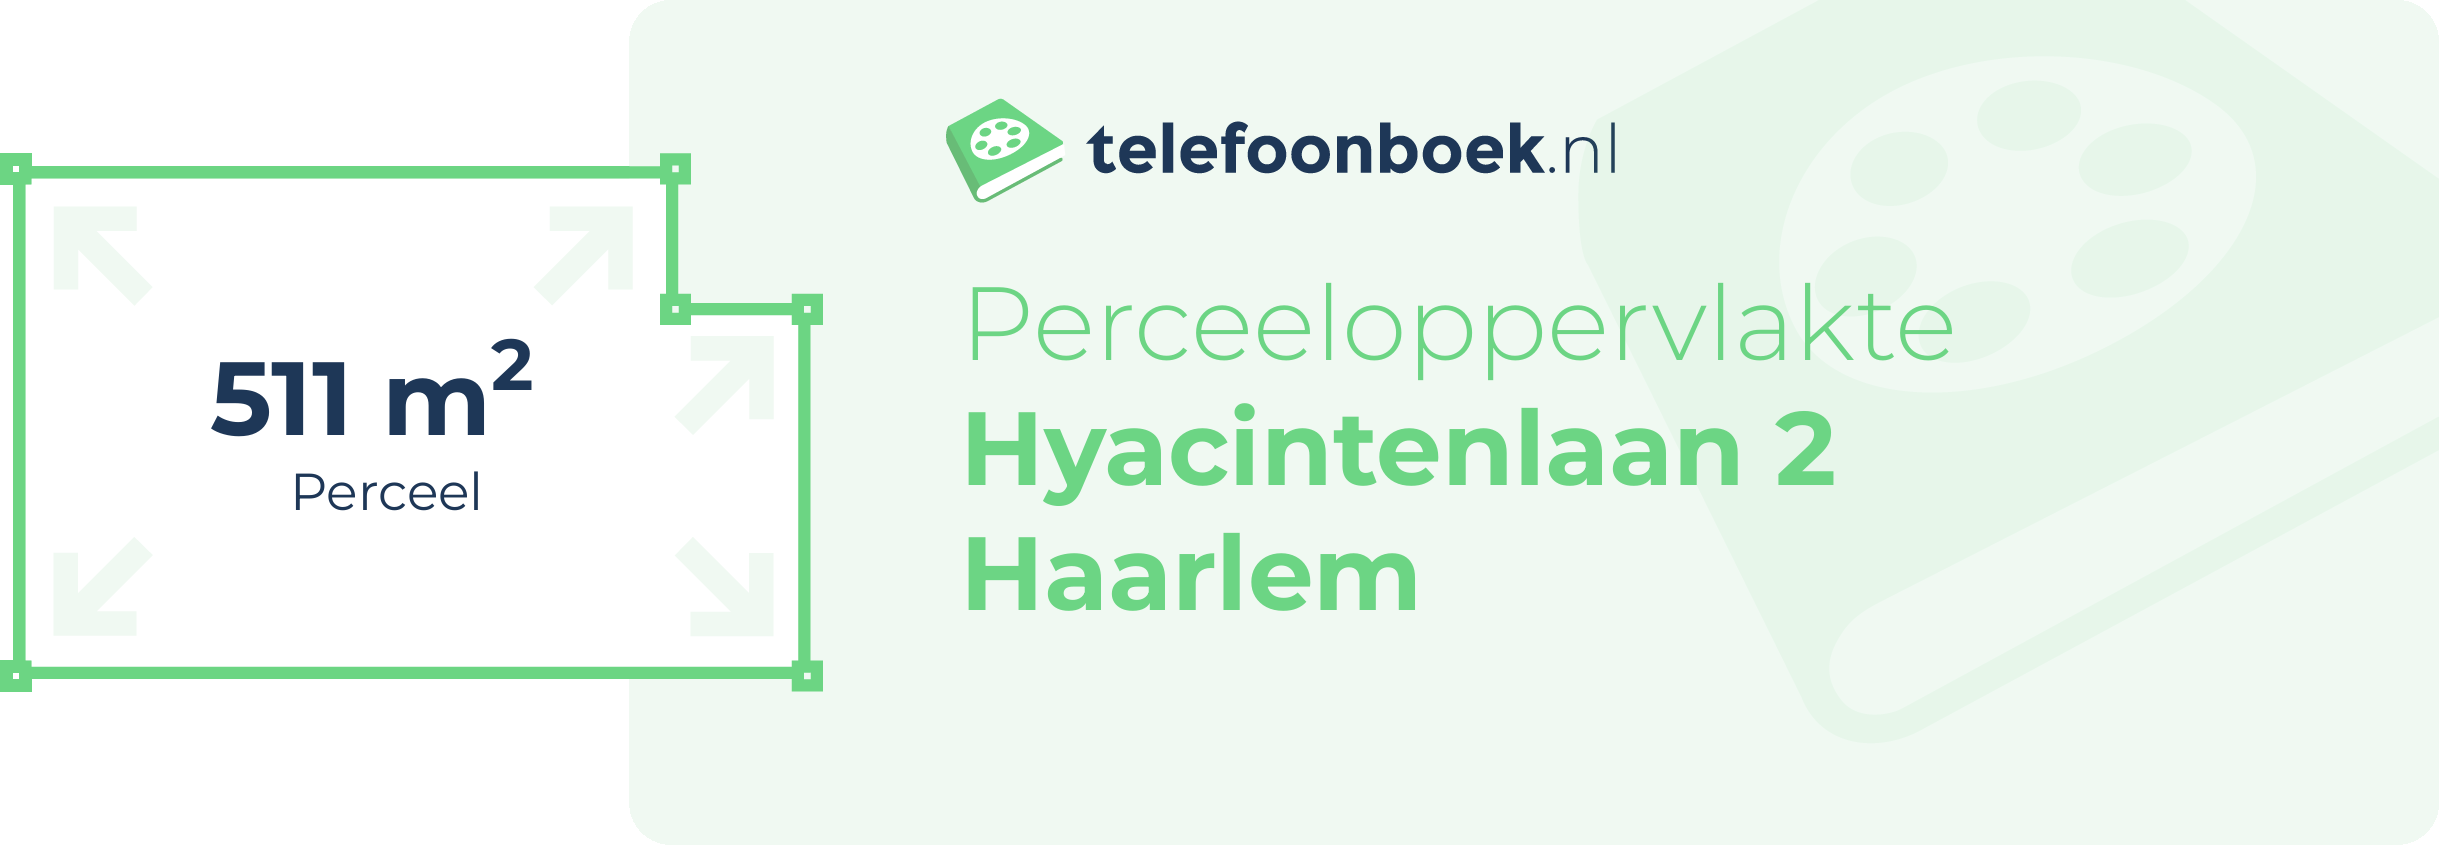 Perceeloppervlakte Hyacintenlaan 2 Haarlem